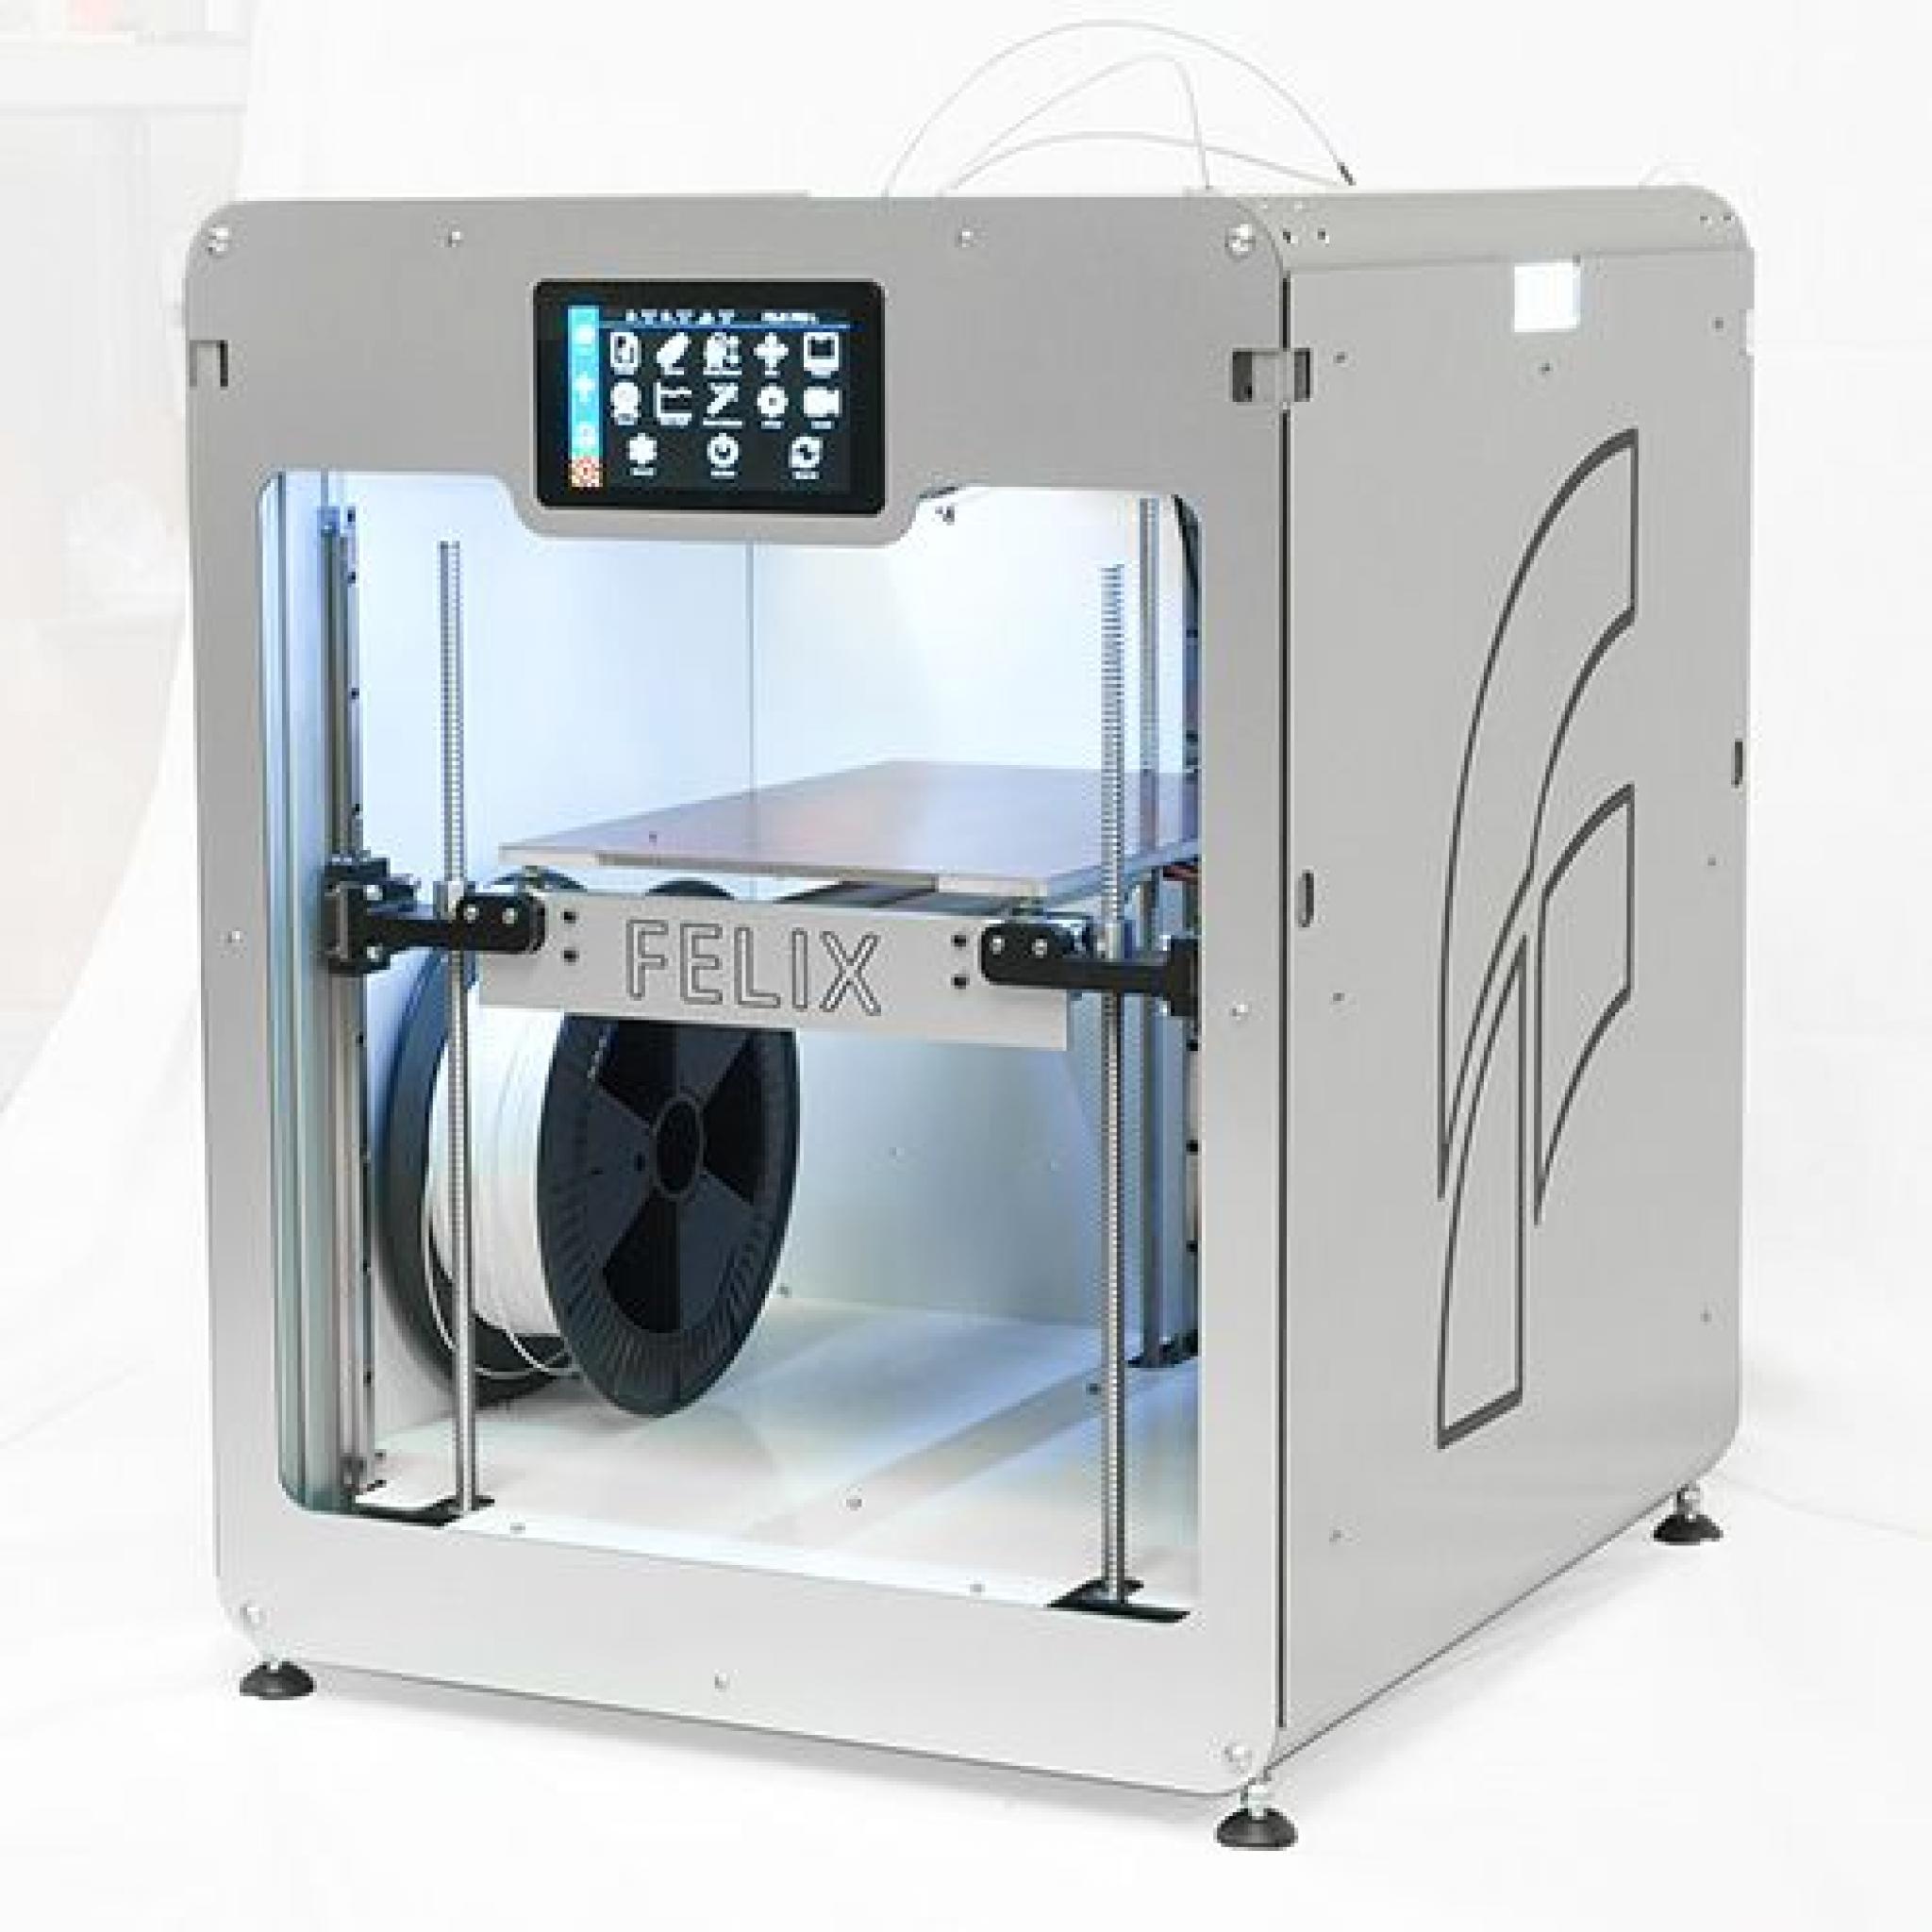 FELIX Pro L & XL 3D printers - 2fD05c11c4e40a33c14cf00b40972459